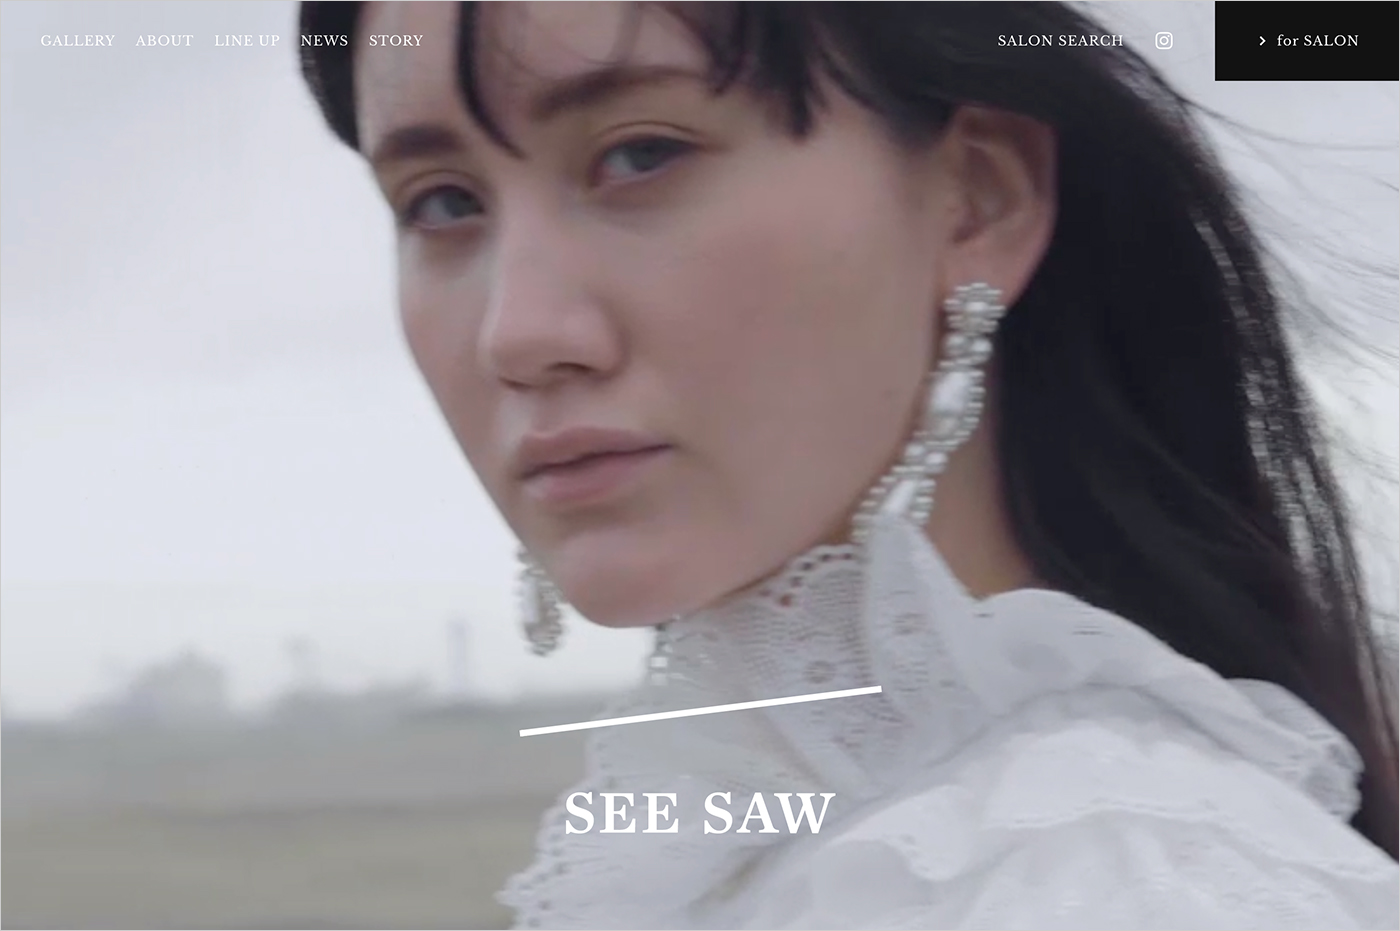 SEE/SAW ルベル ヘアケアシリーズウェブサイトの画面キャプチャ画像